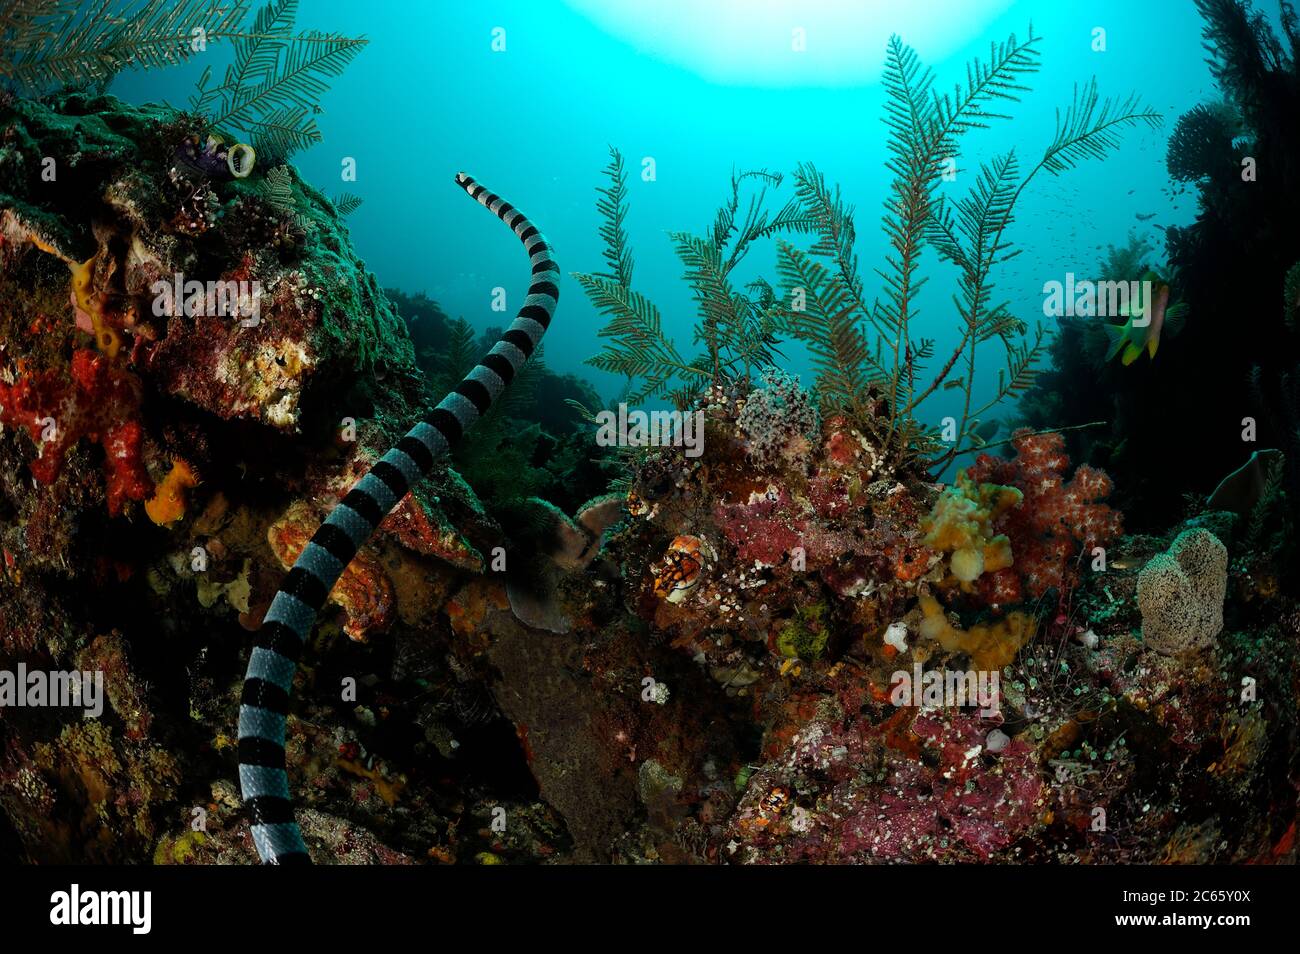 Couleuvre de Belcher (Hydrophis belcheri) Raja Ampat, Papouasie occidentale, Indonésie, Océan Pacifique [taille d'un seul organisme : 1,2 m] Banque D'Images